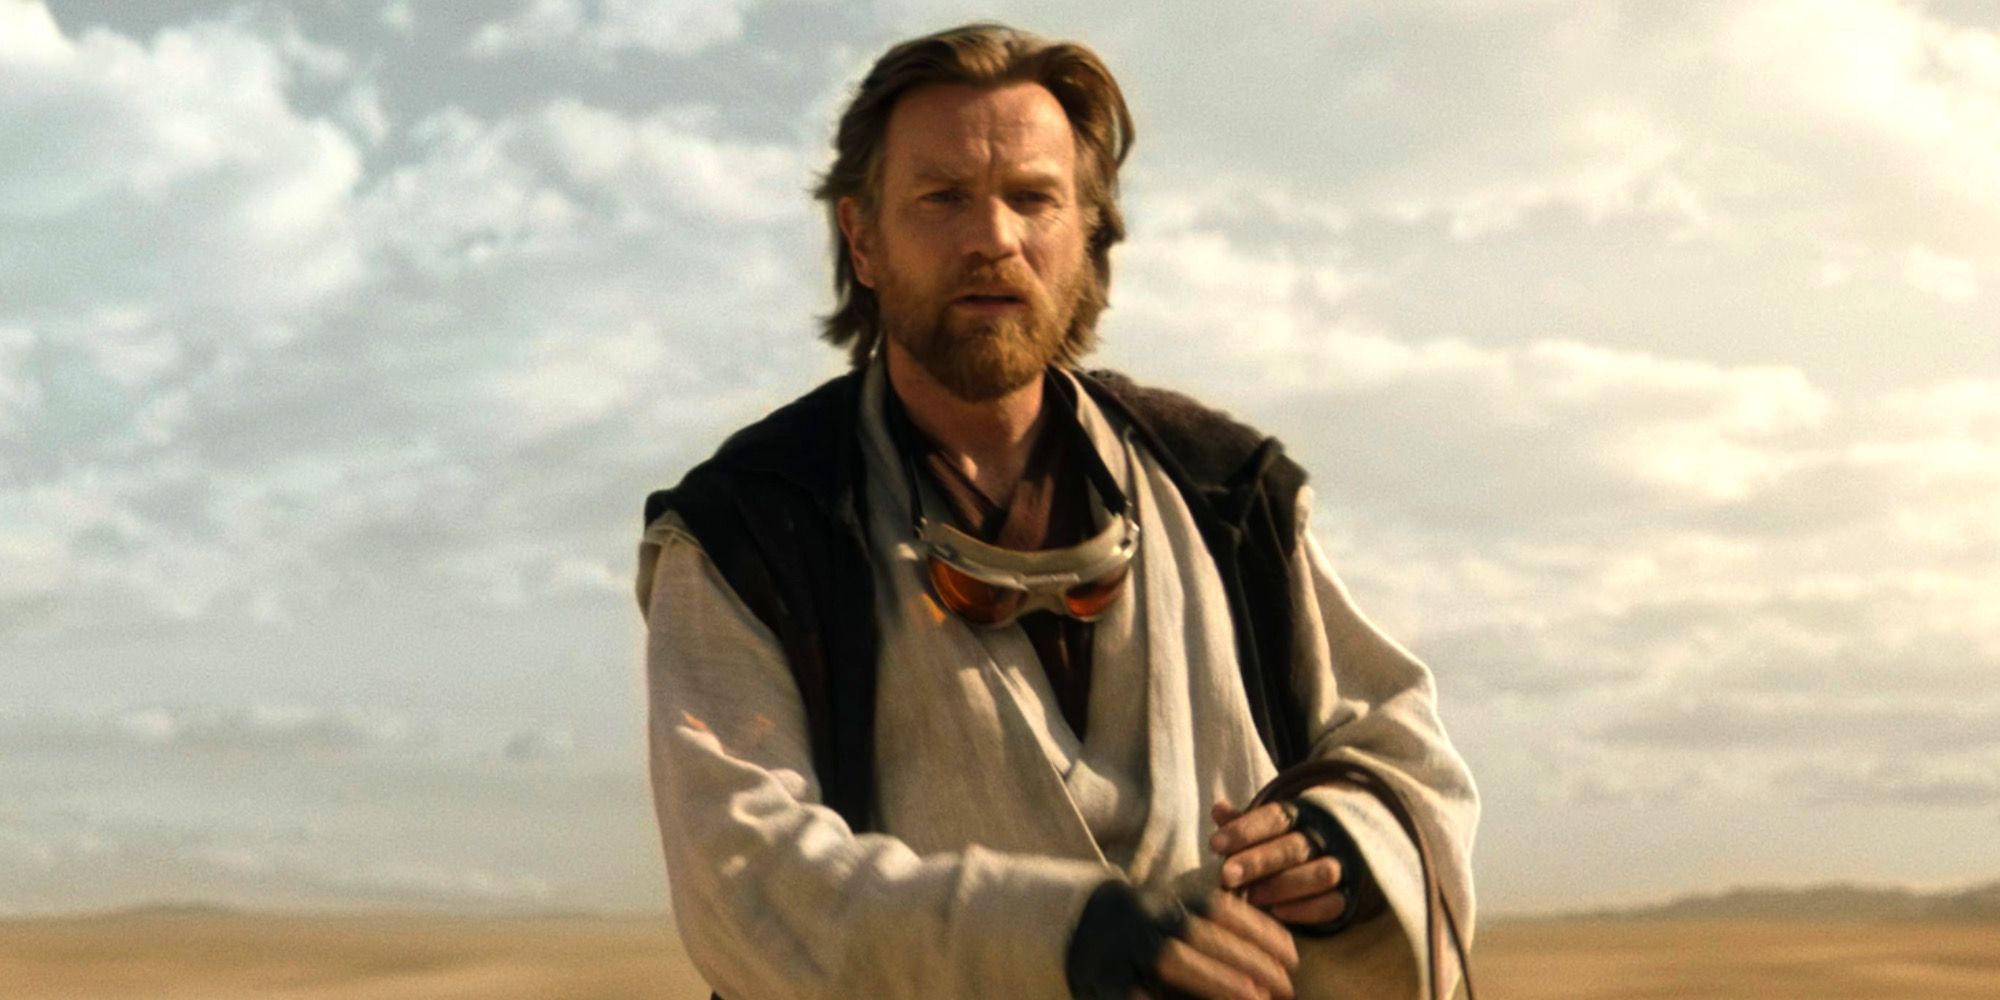 Obi-Wan Kenobi in Kenobi Episode VI